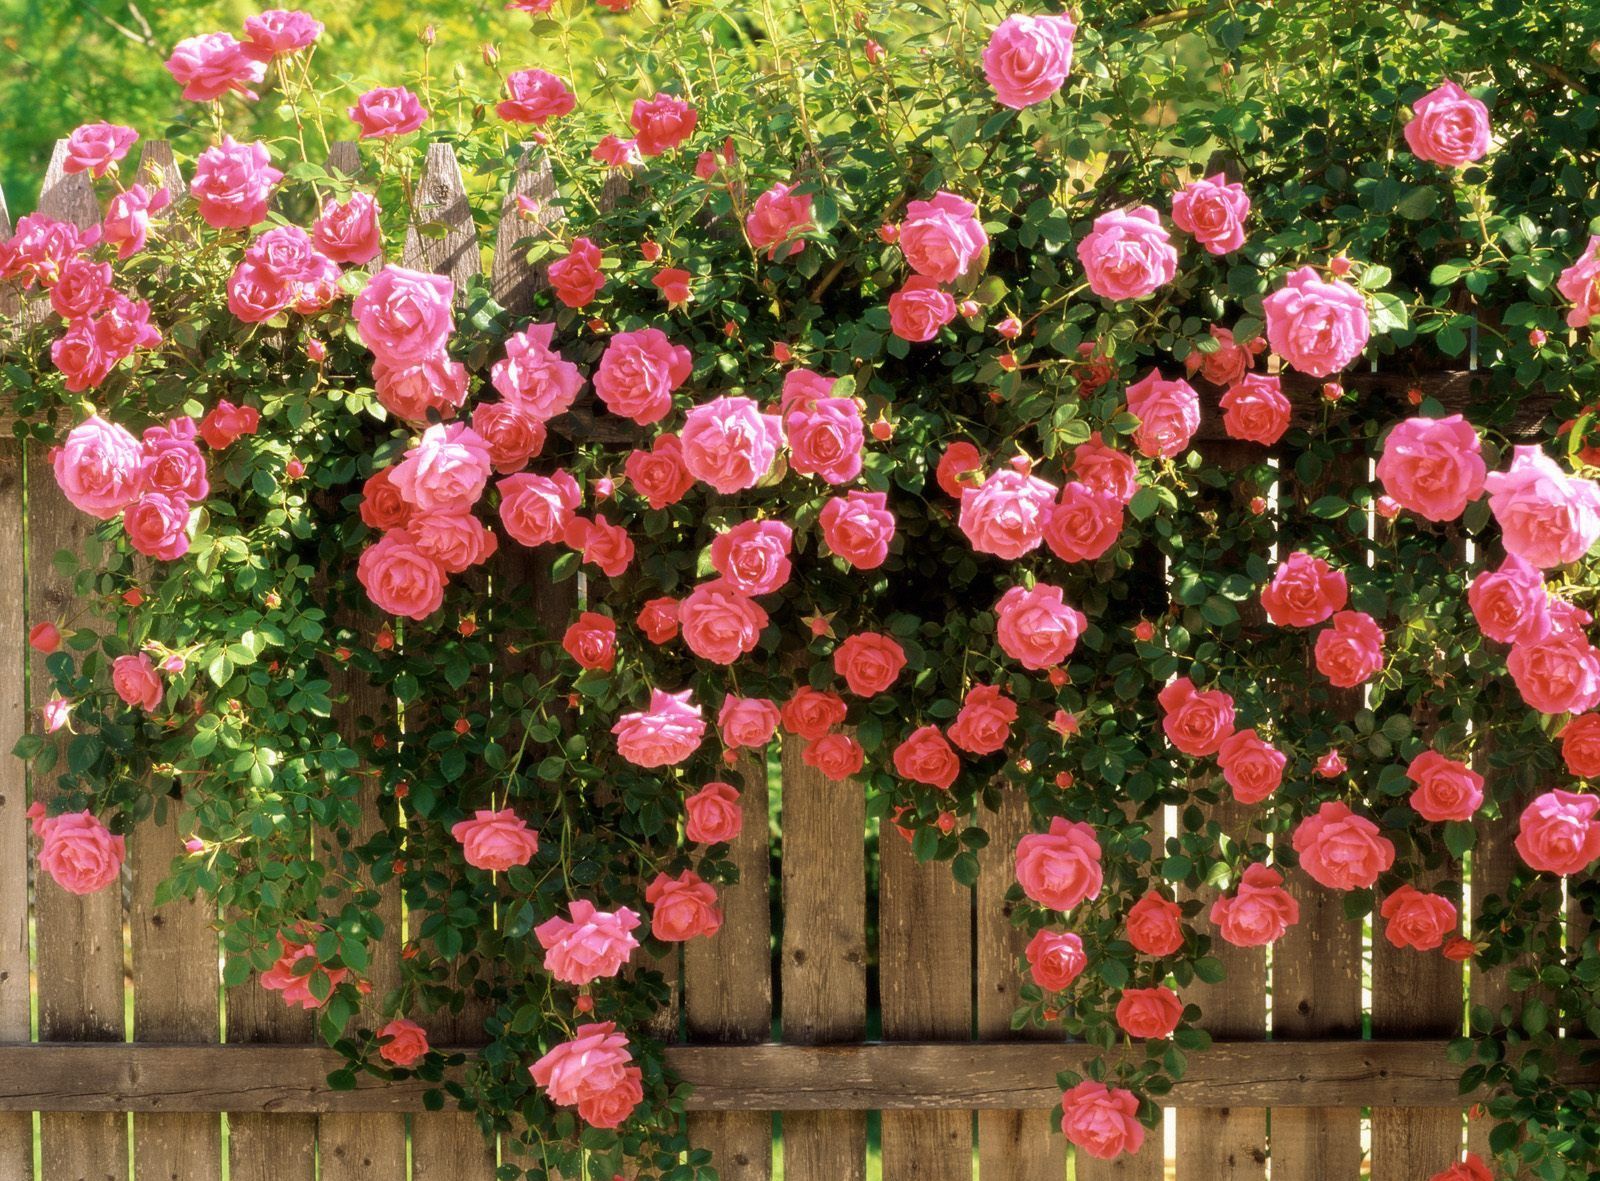 Hình nền hoa hồng đẹp nhất, 200+ mẫu full HD, Free download